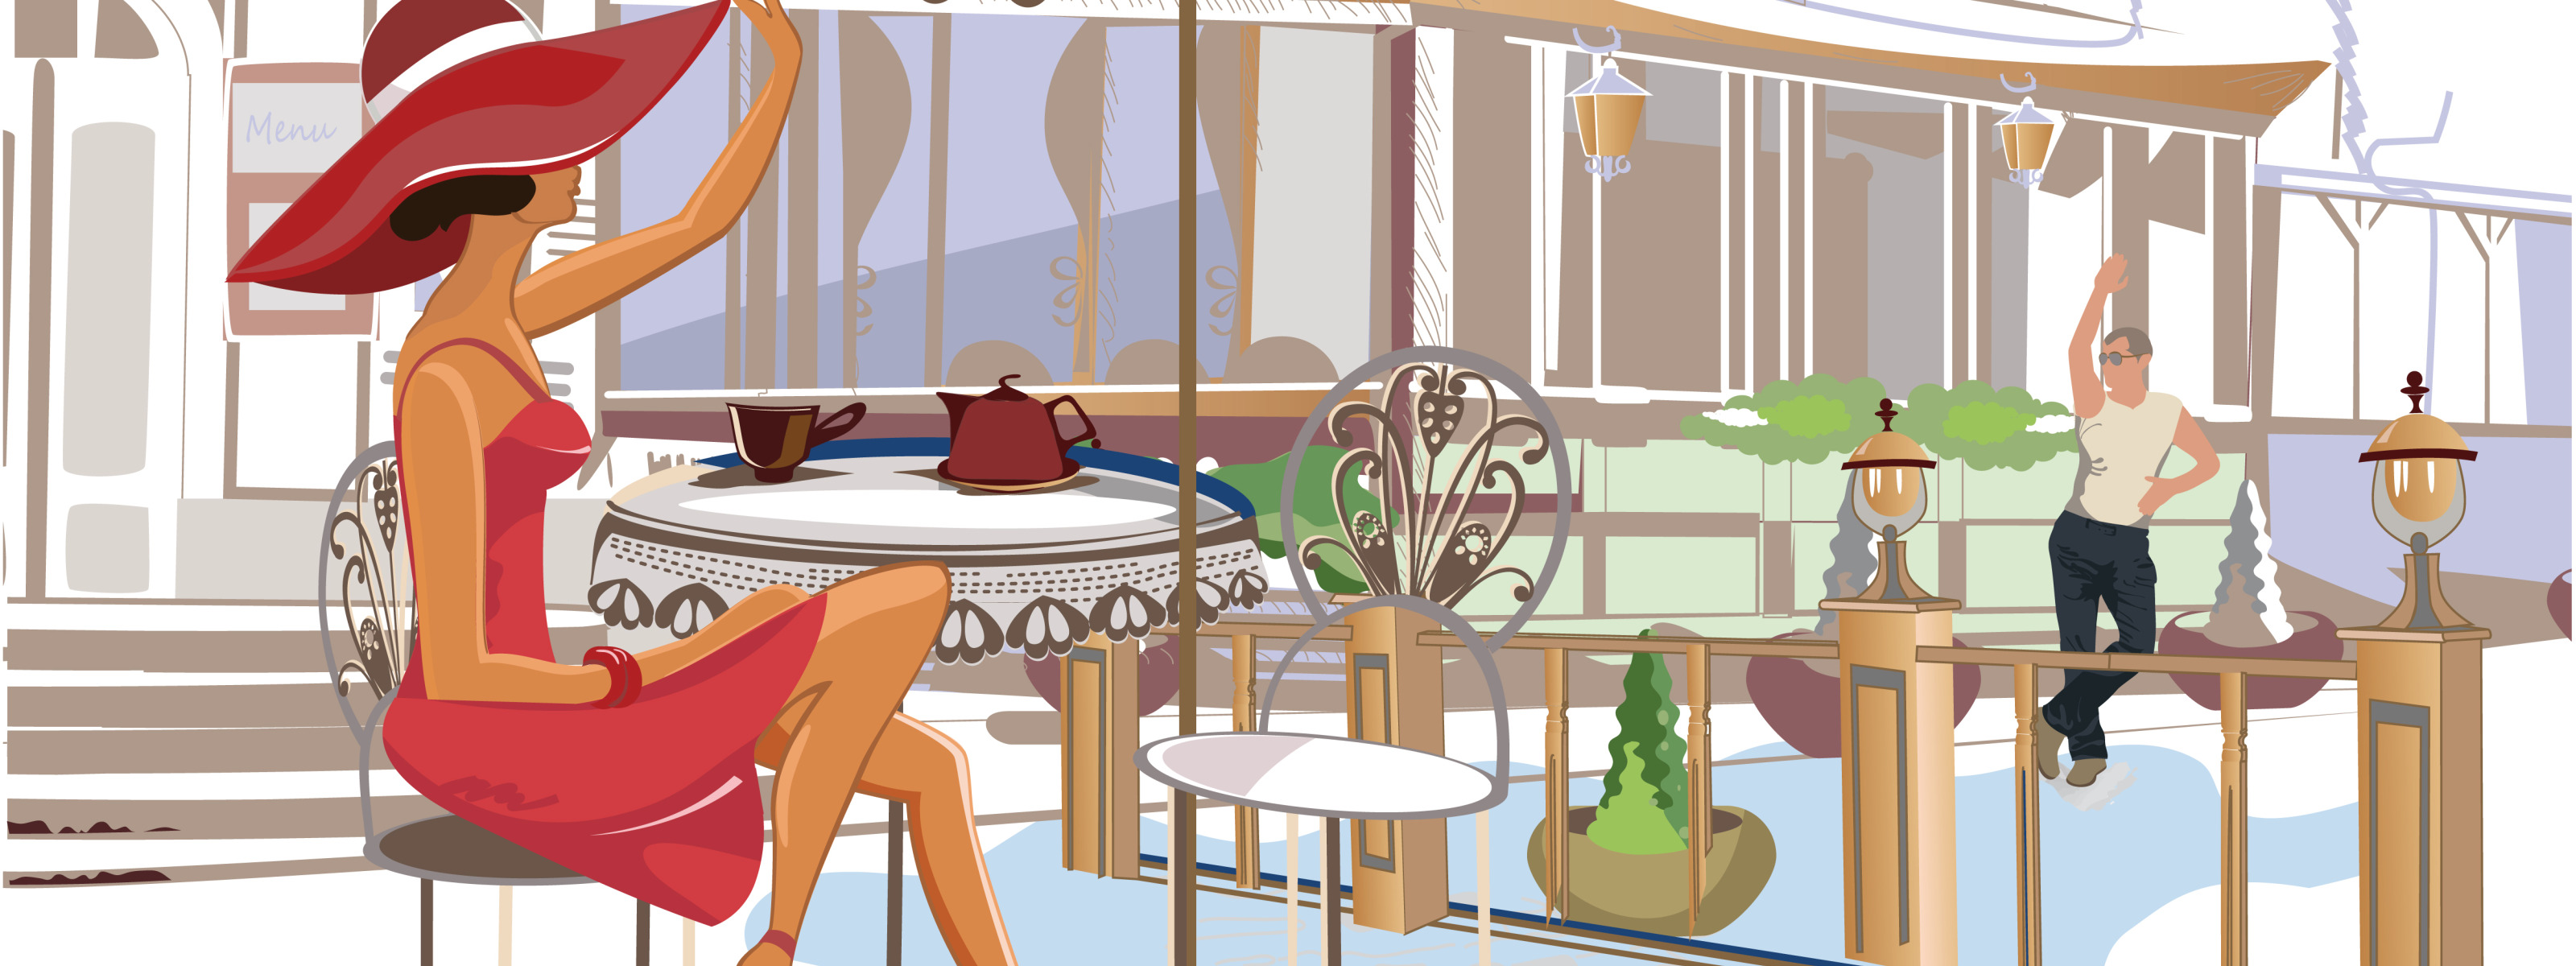 Кафе мультяшное. Девушка и мужчина в кафе мультяшные. Мультяшный кафе на пляже. Девушка за столиком референс вид с боку.